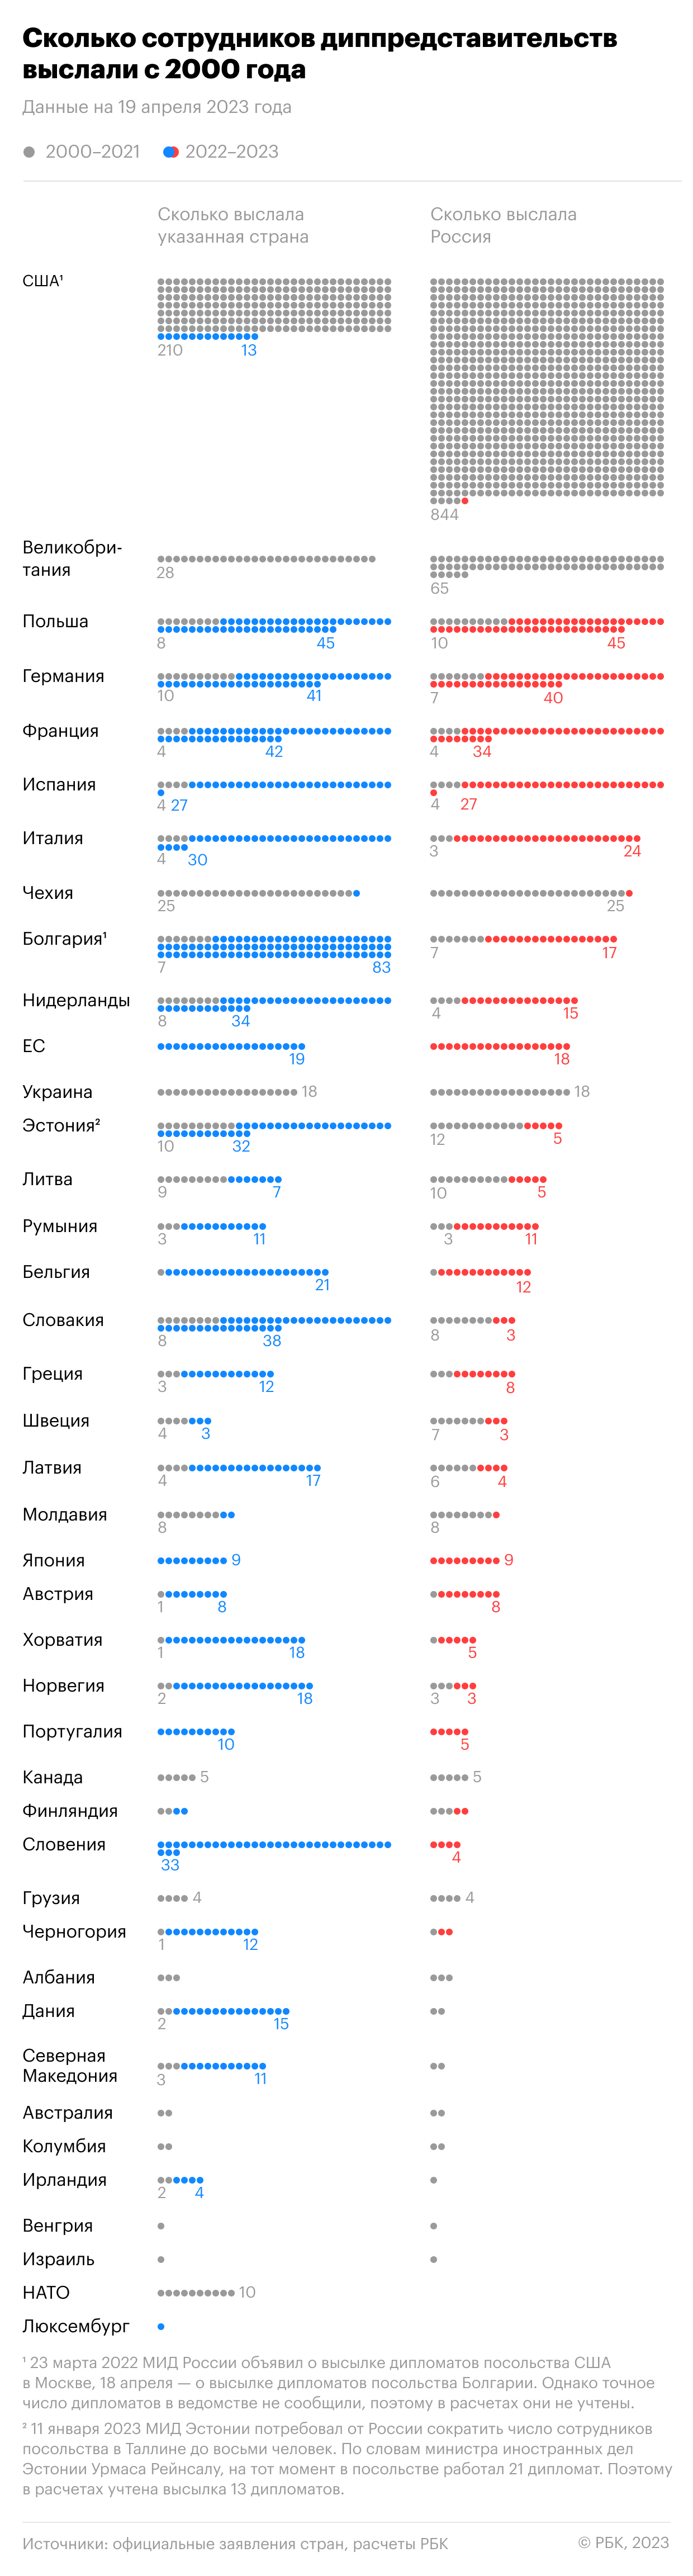 Как Запад и Россия поставили рекорд по высылкам дипломатов. Инфографика